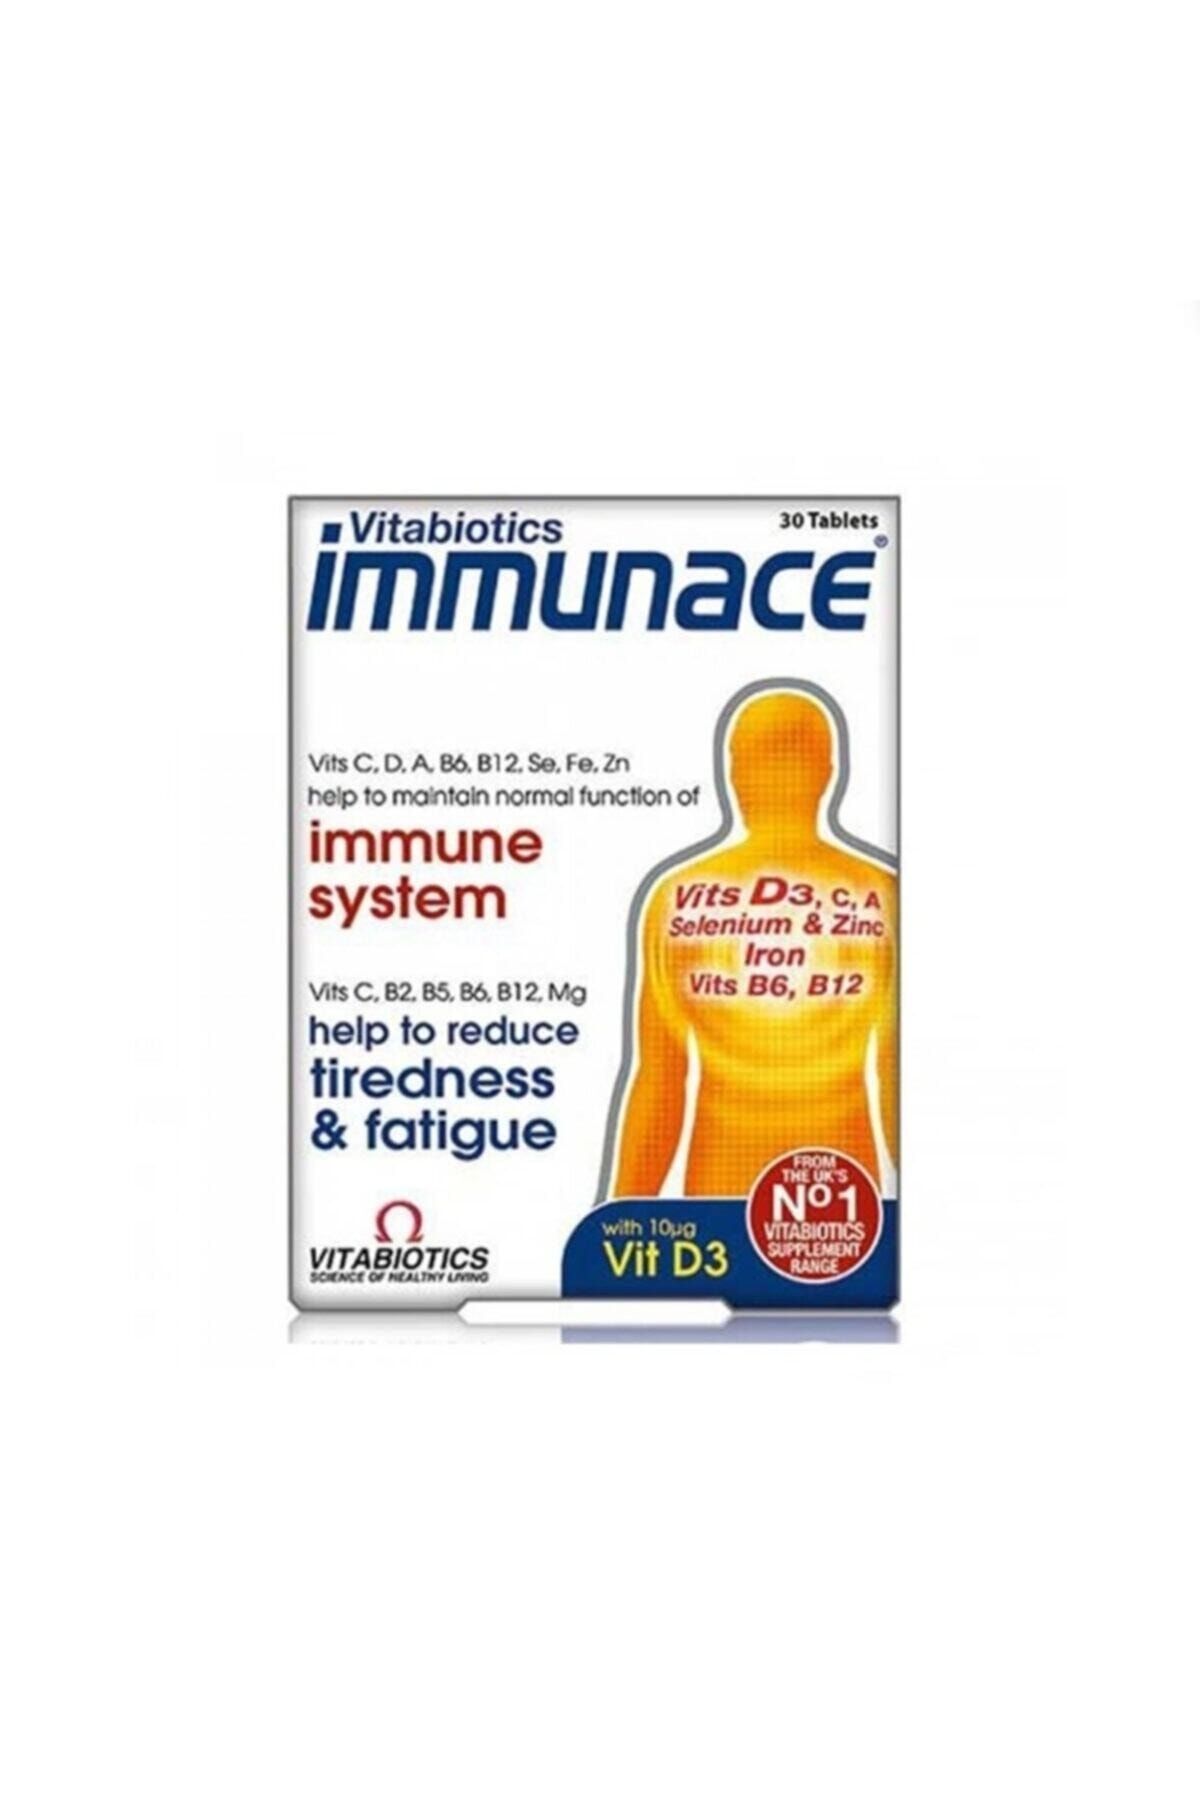 Immunace Immunace